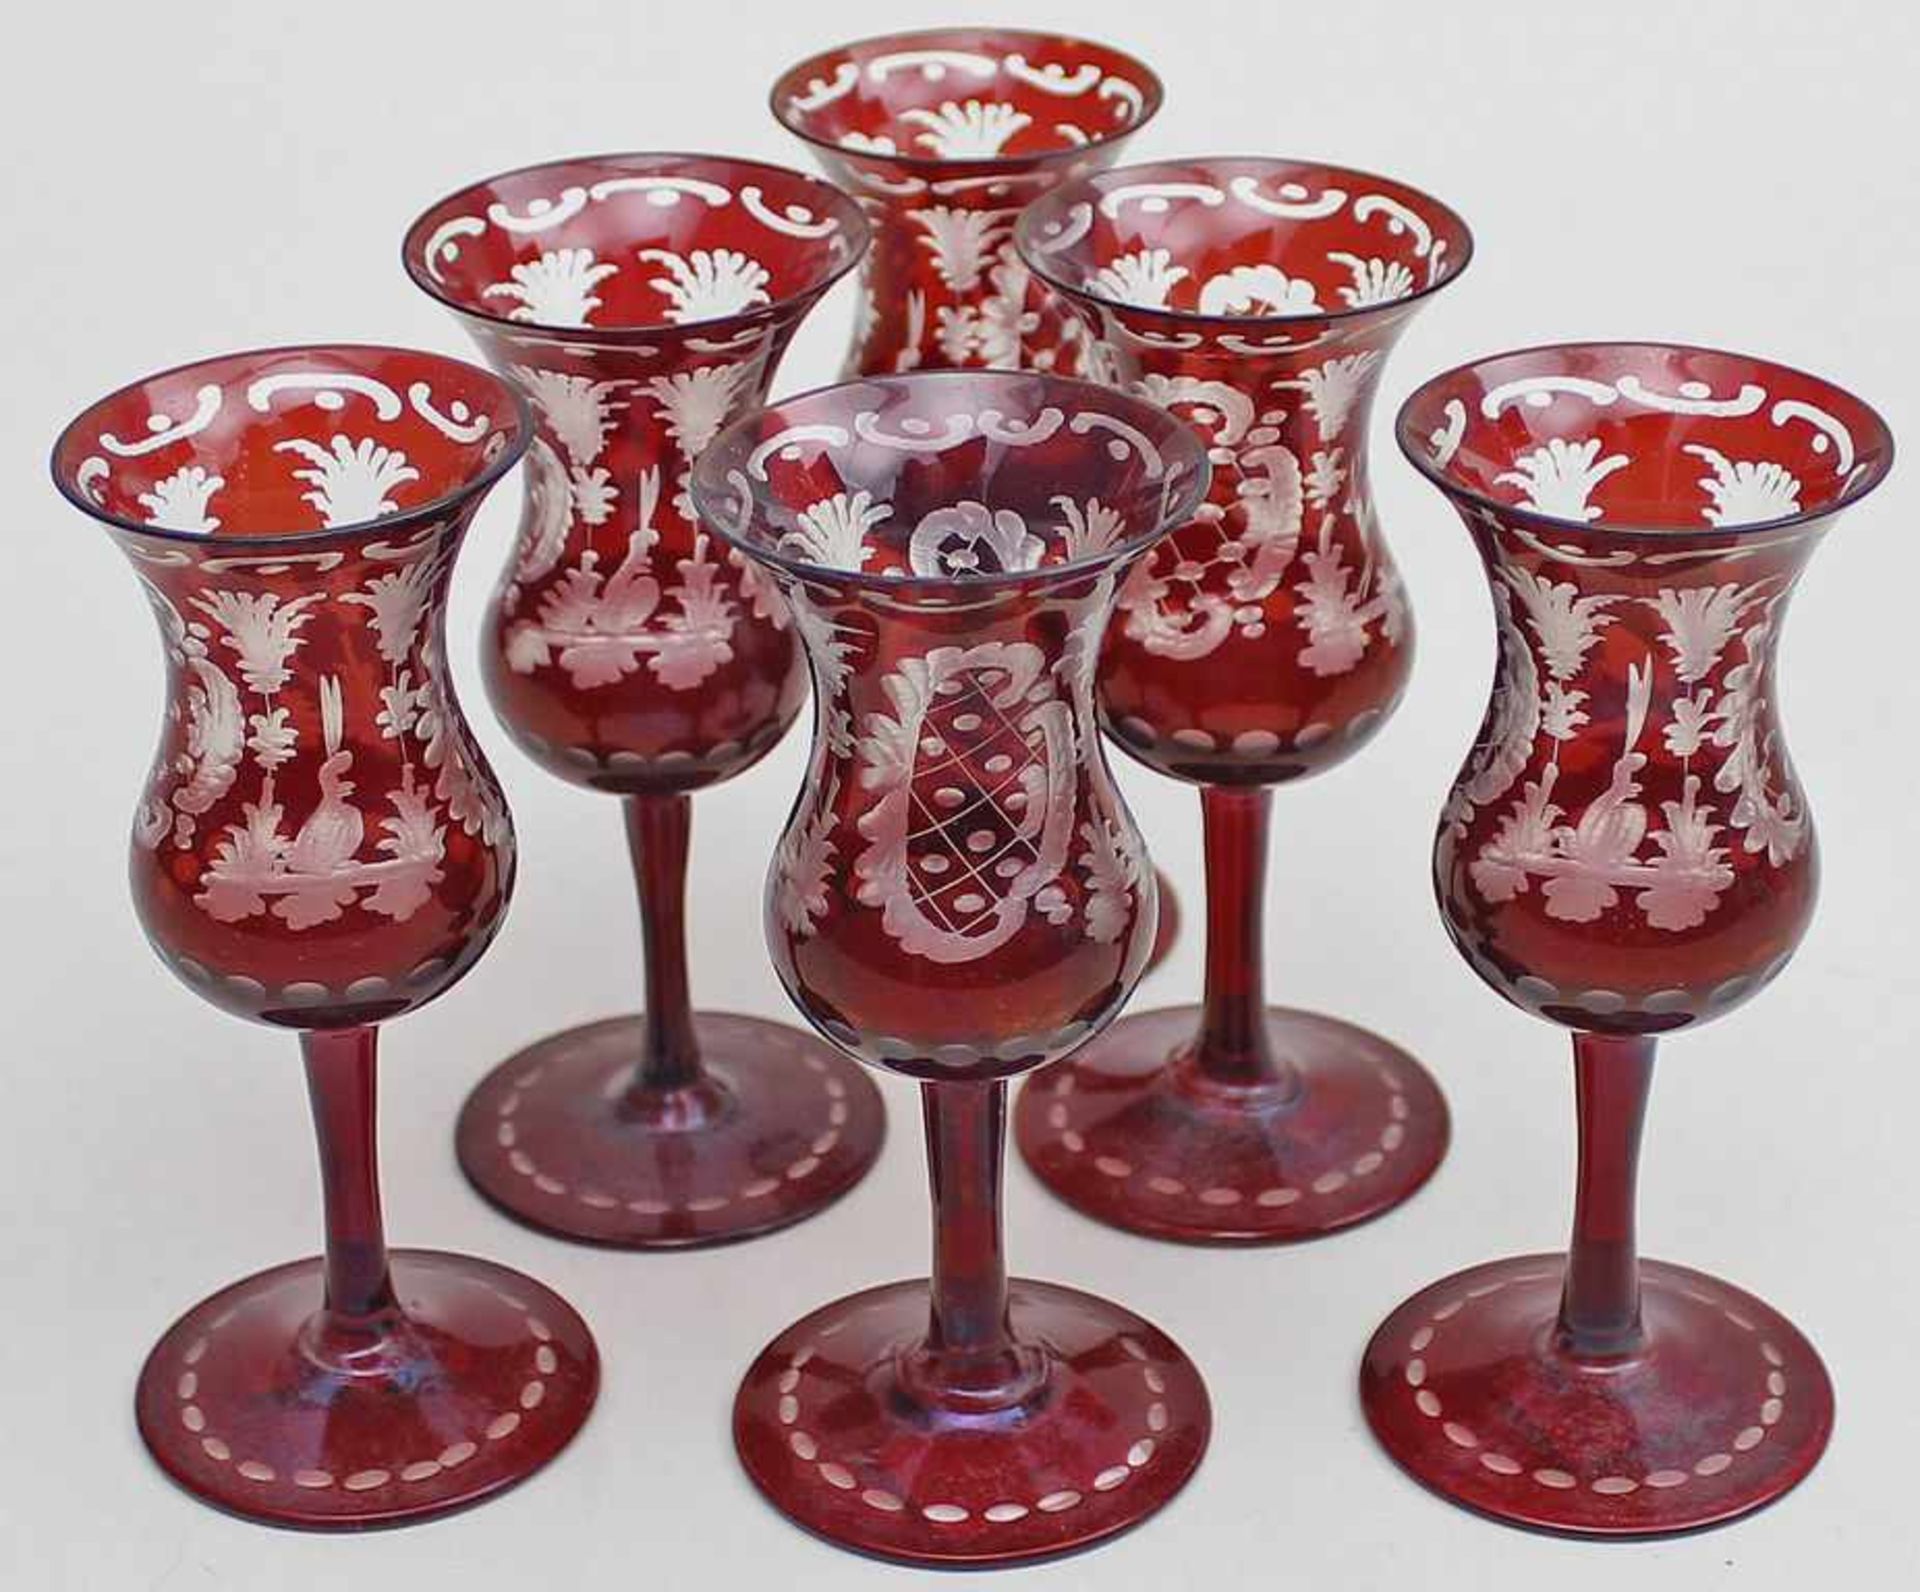 6 Grappagläser.Farbloses, rubiniertes Glas mit so genanntem "Egermann-Schliff". Böhmen, 20. Jh. H.